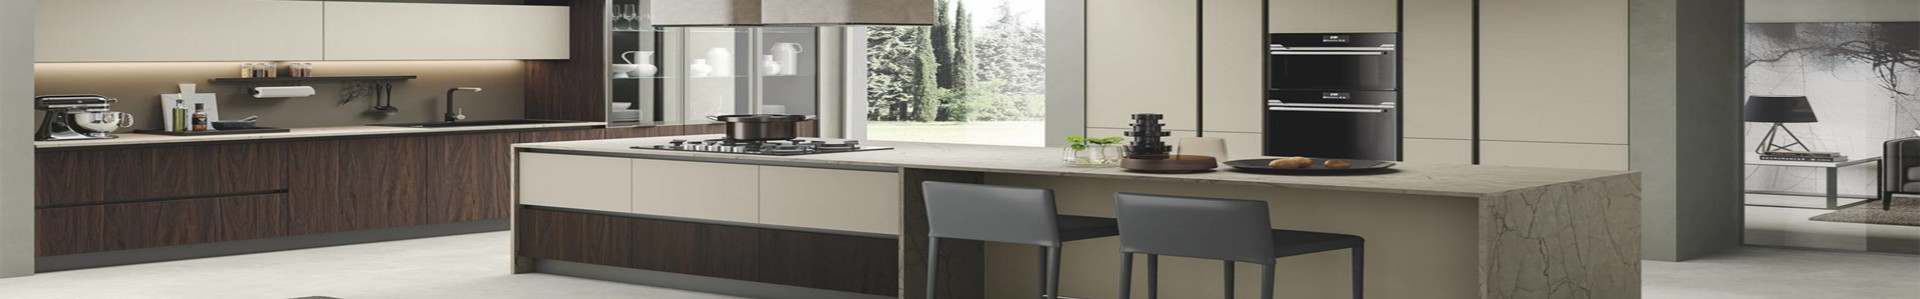 Modern style kitchen cabinet